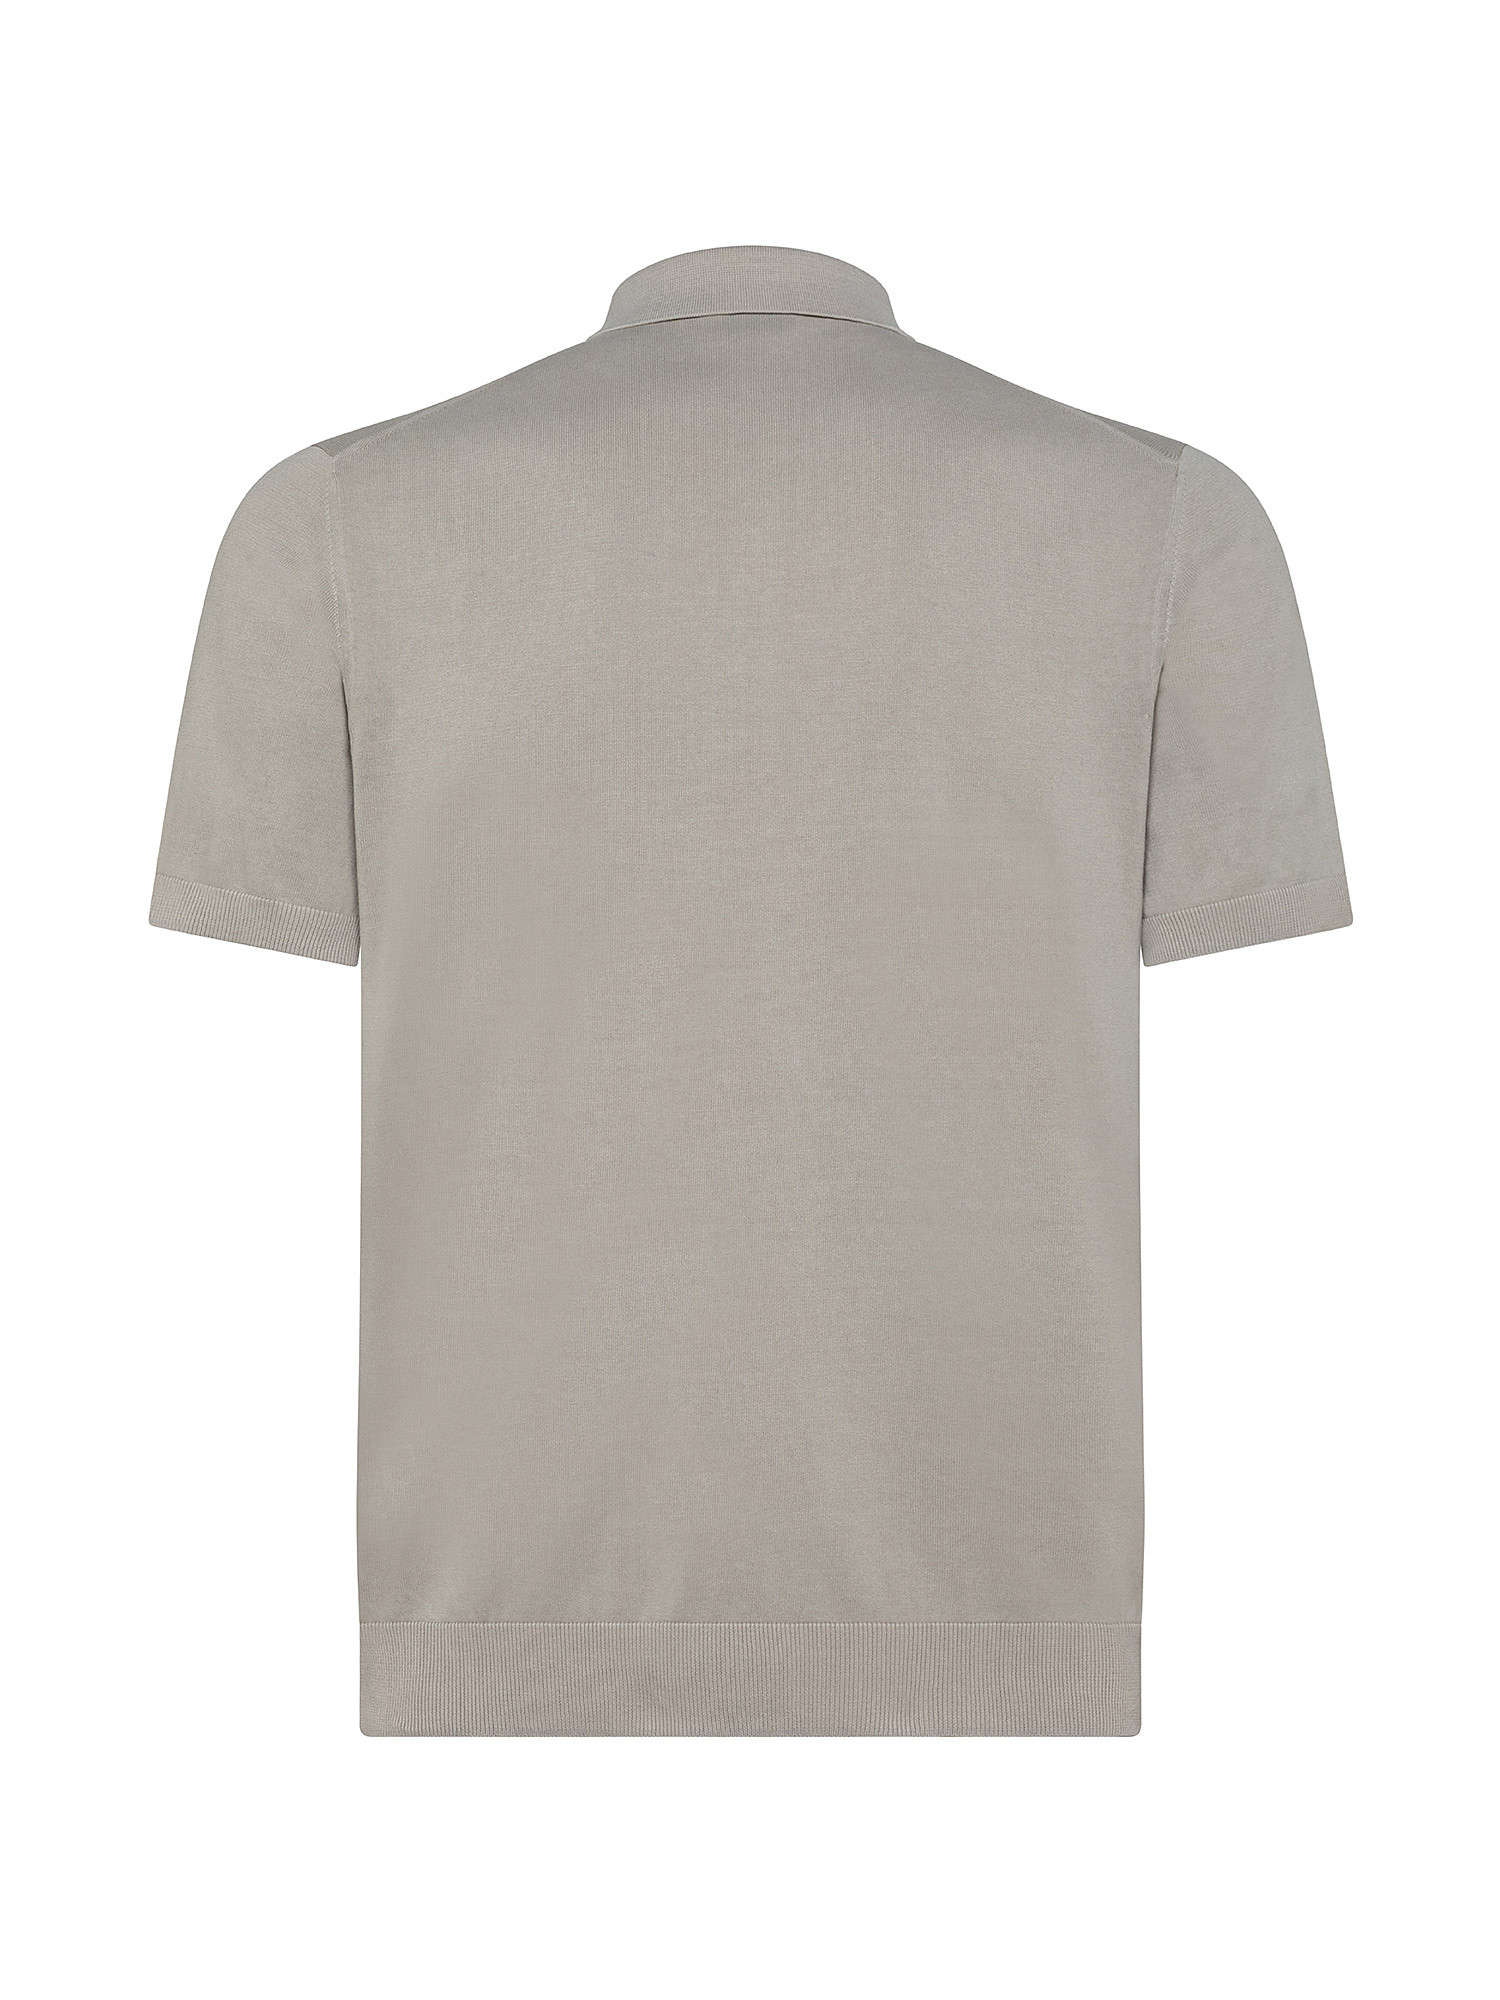 Polo in maglia di cotone, Grigio chiaro, large image number 1